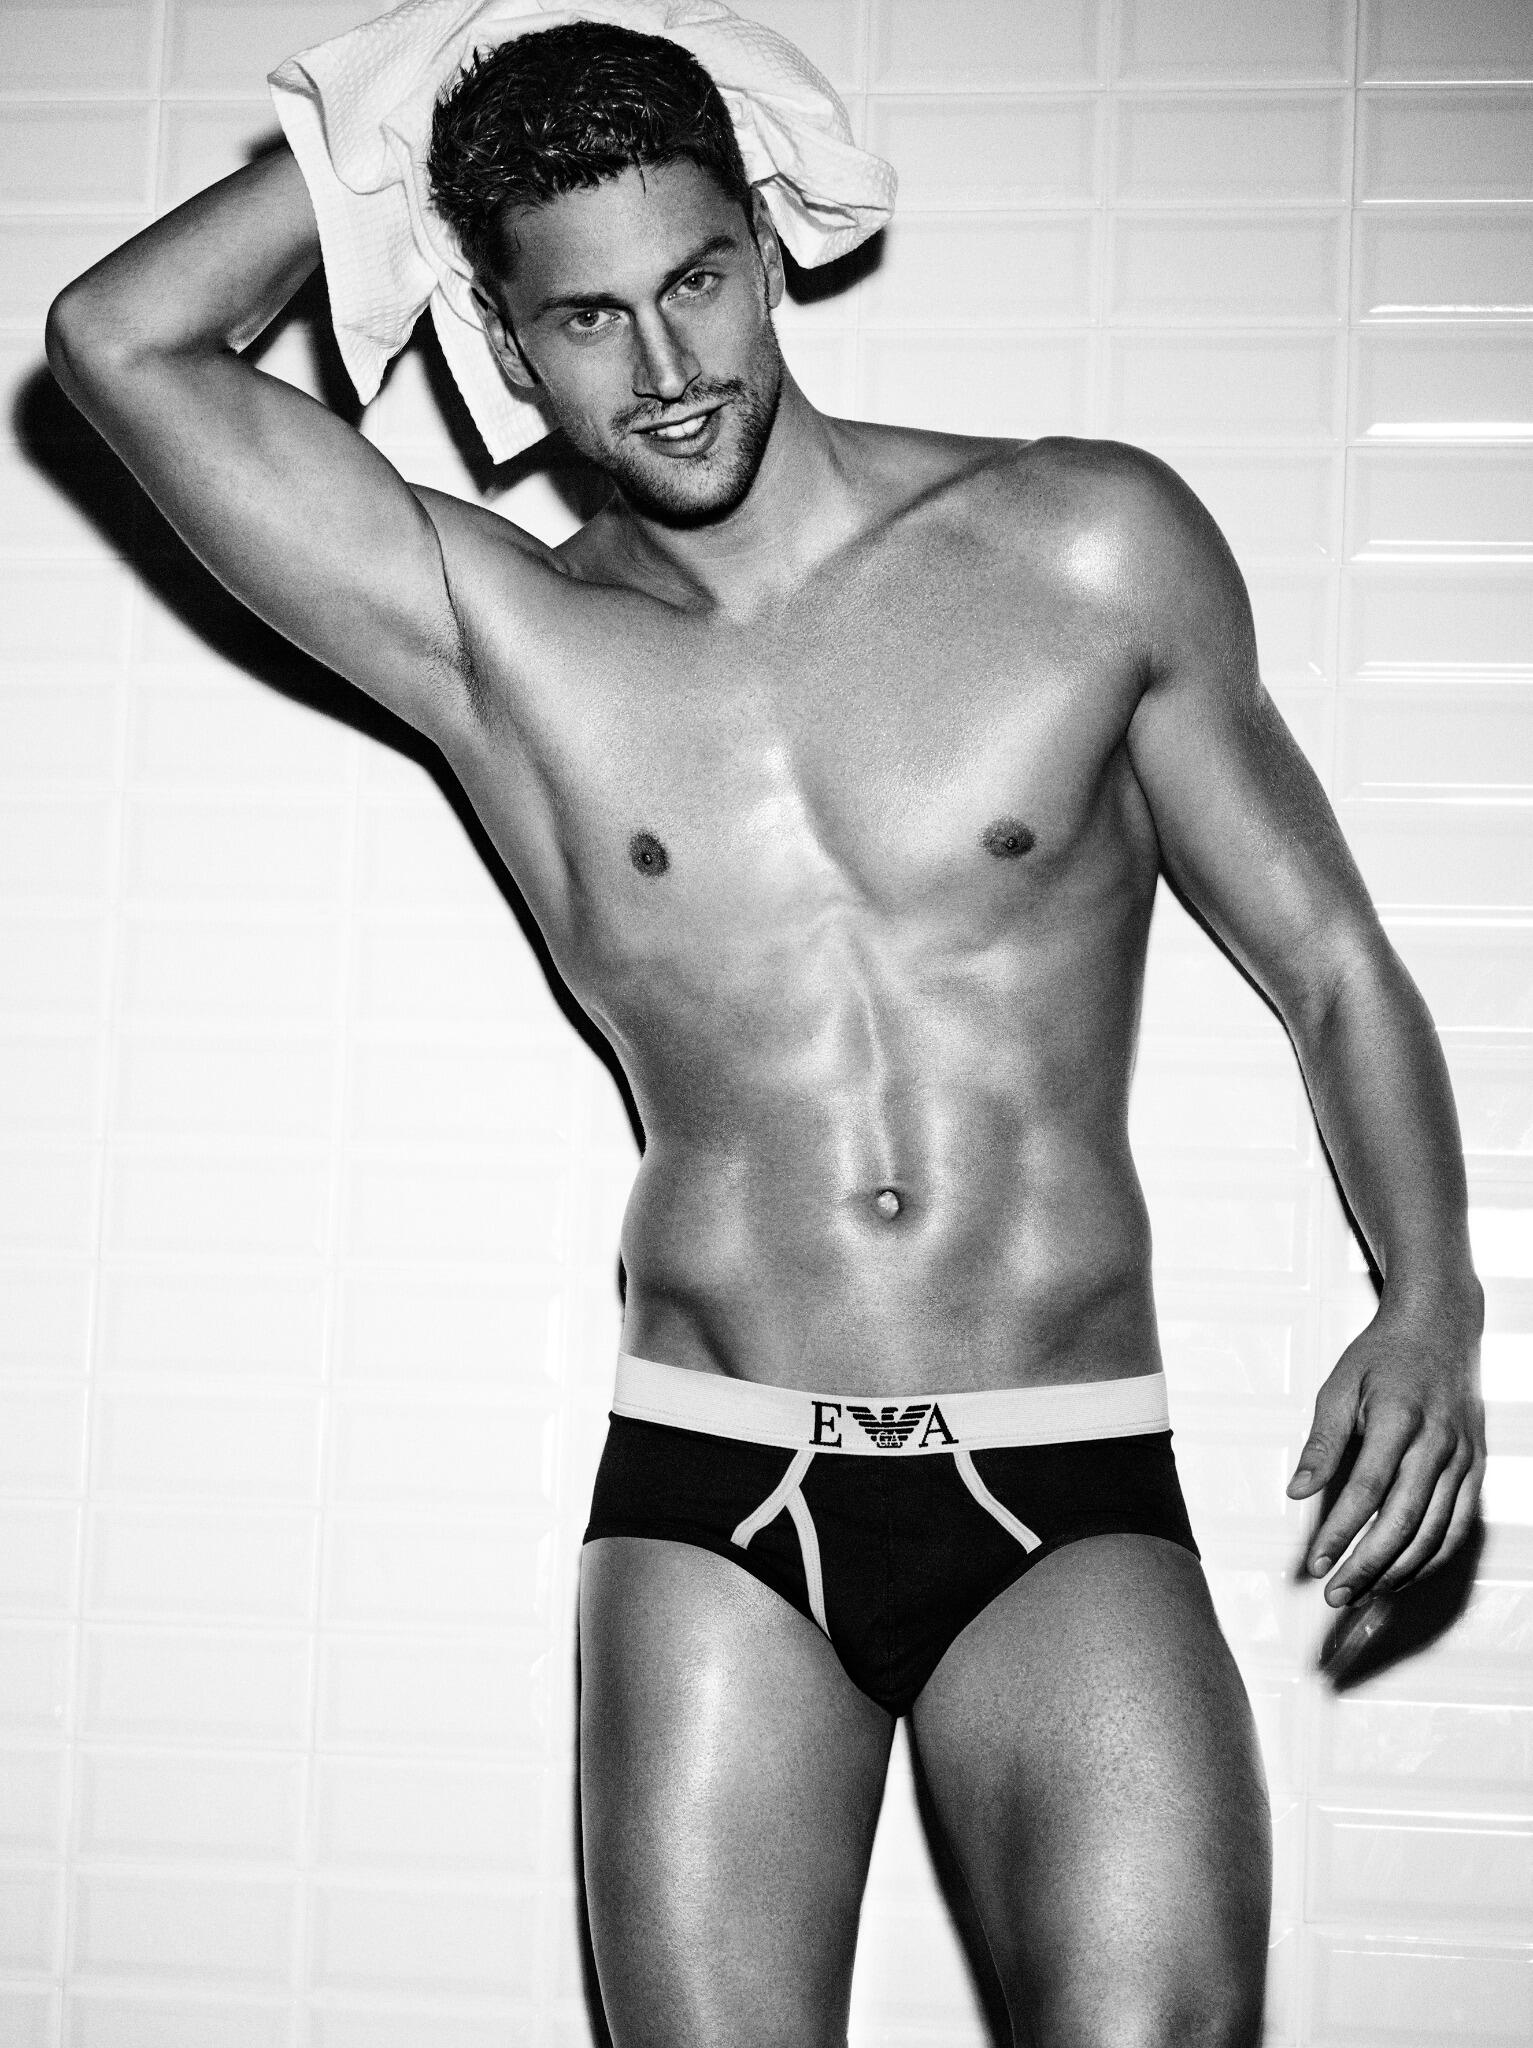 Armani on X: Italian swimmer Luca Dotto for Emporio Armani #Underwear -   / X